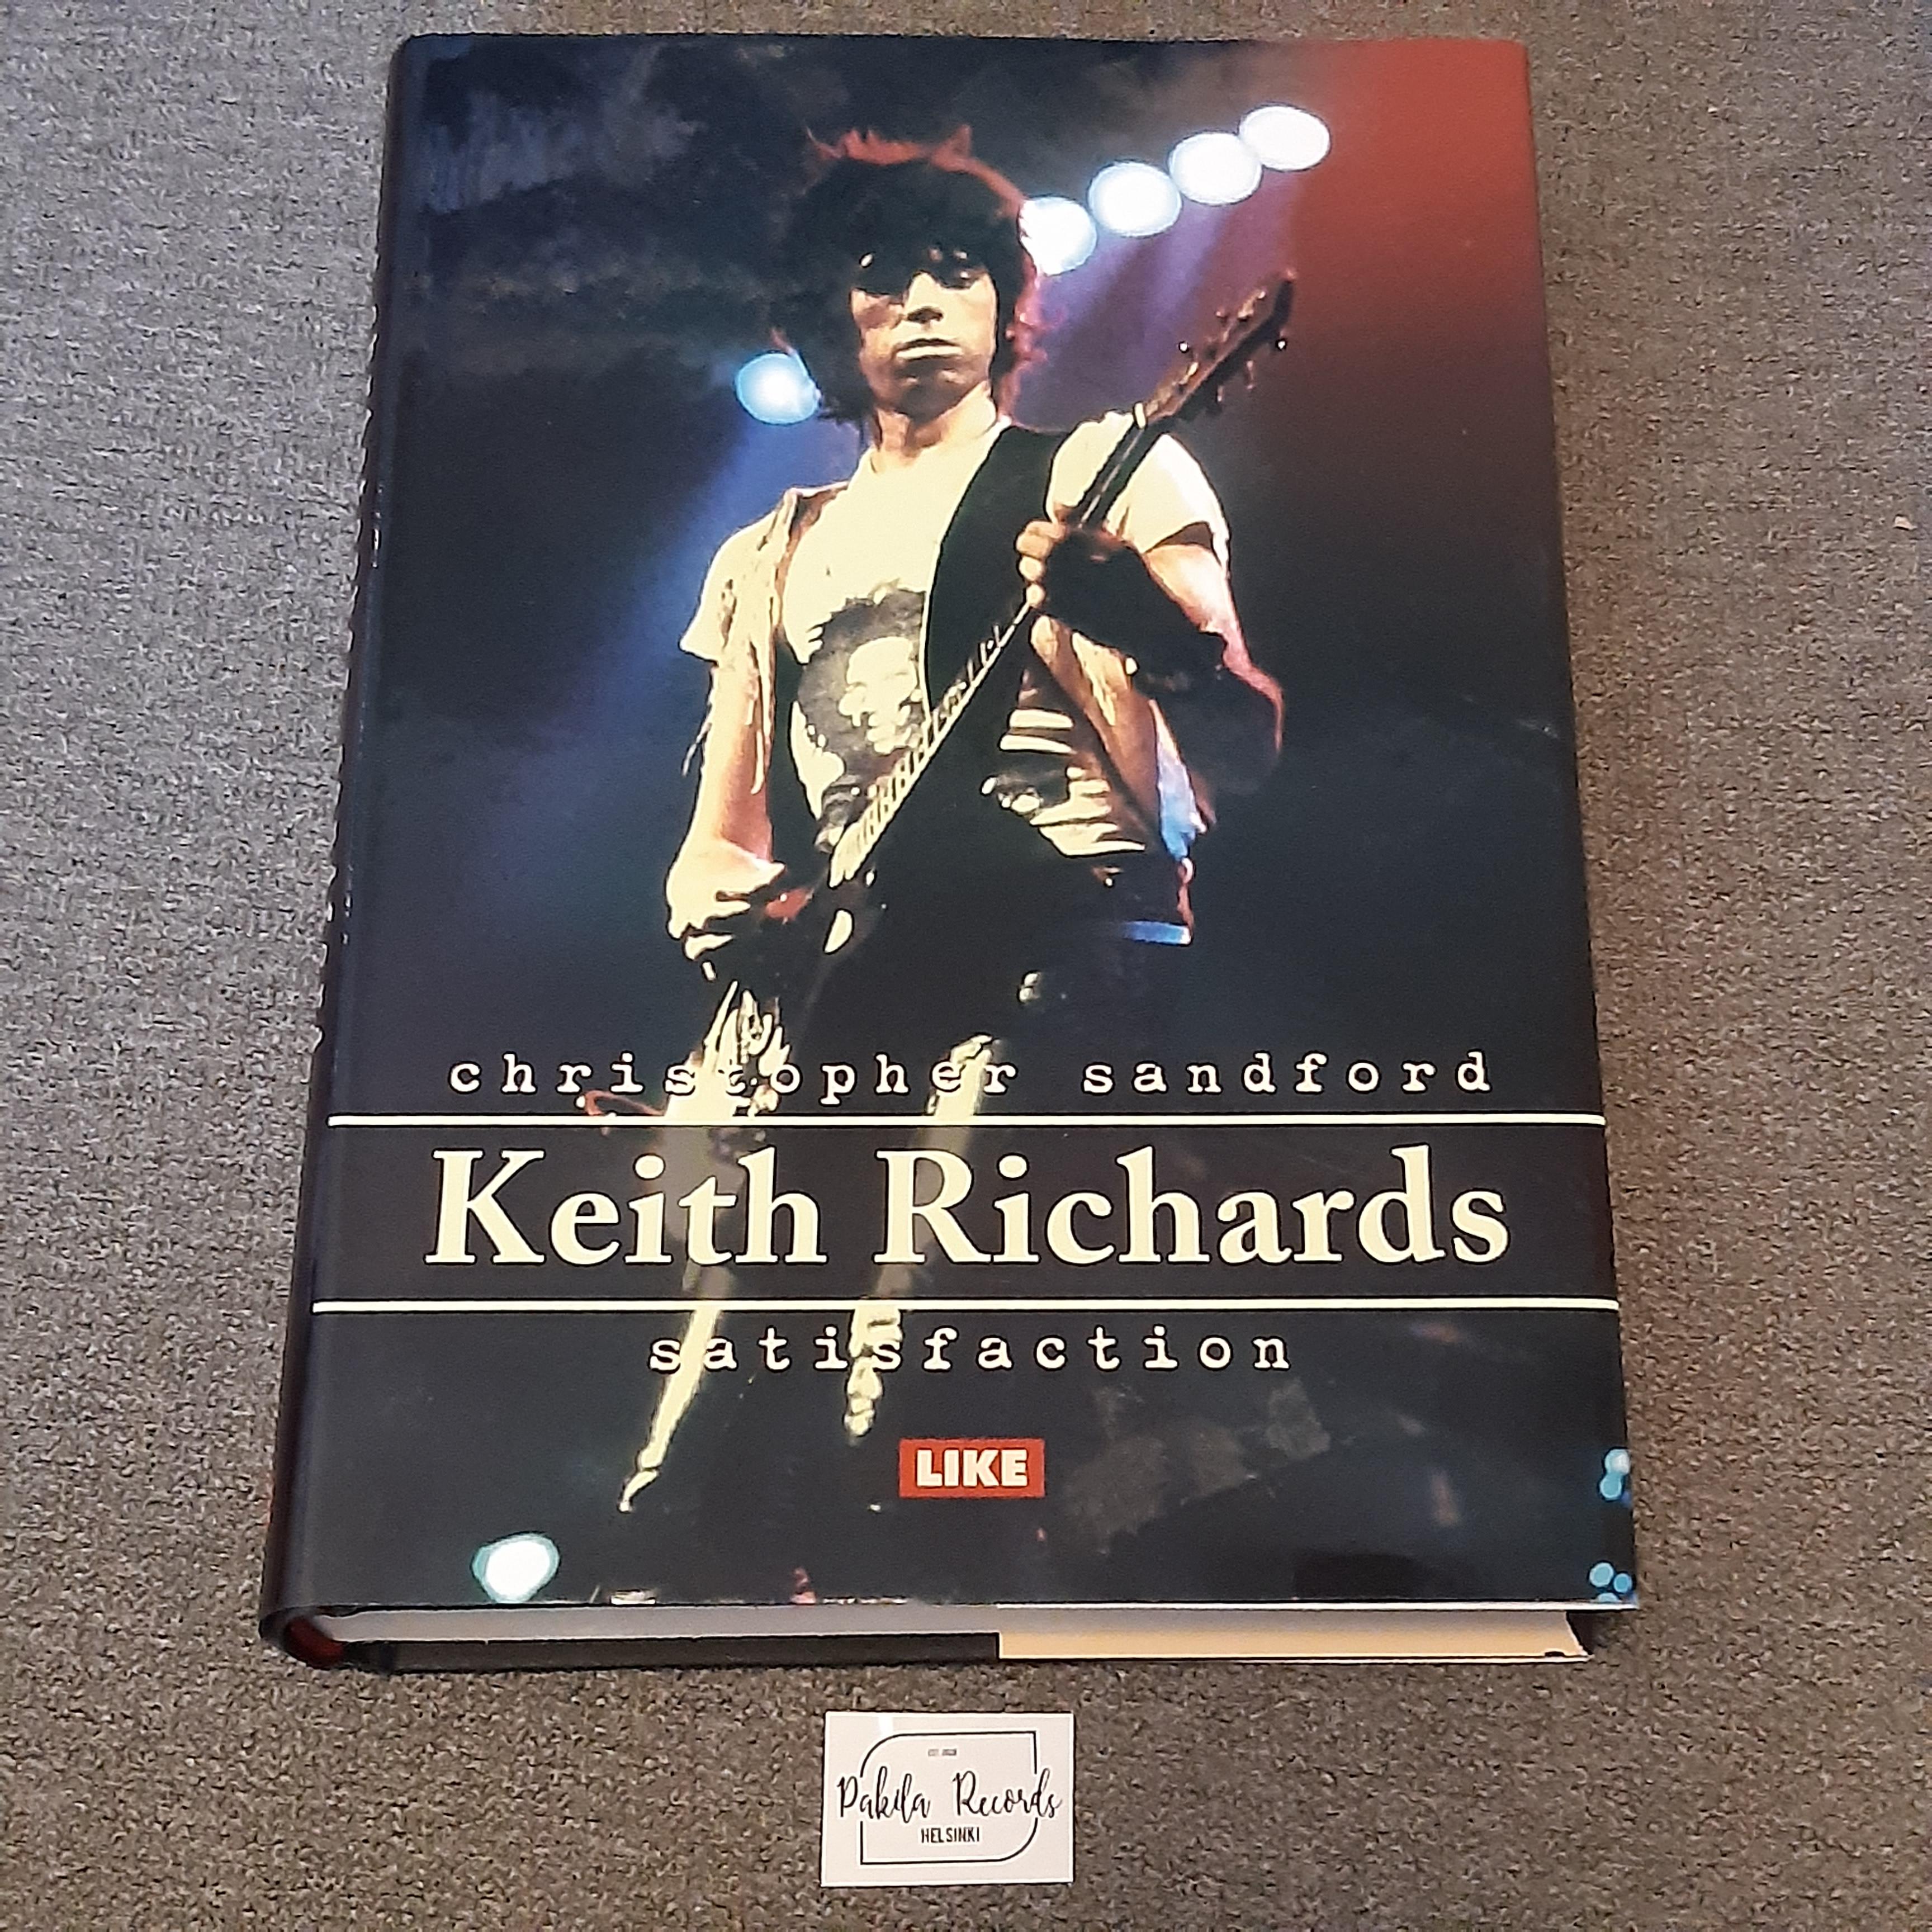 Keith Richards, Satisfaction - Christopher Sandford - Kirja (käytetty)